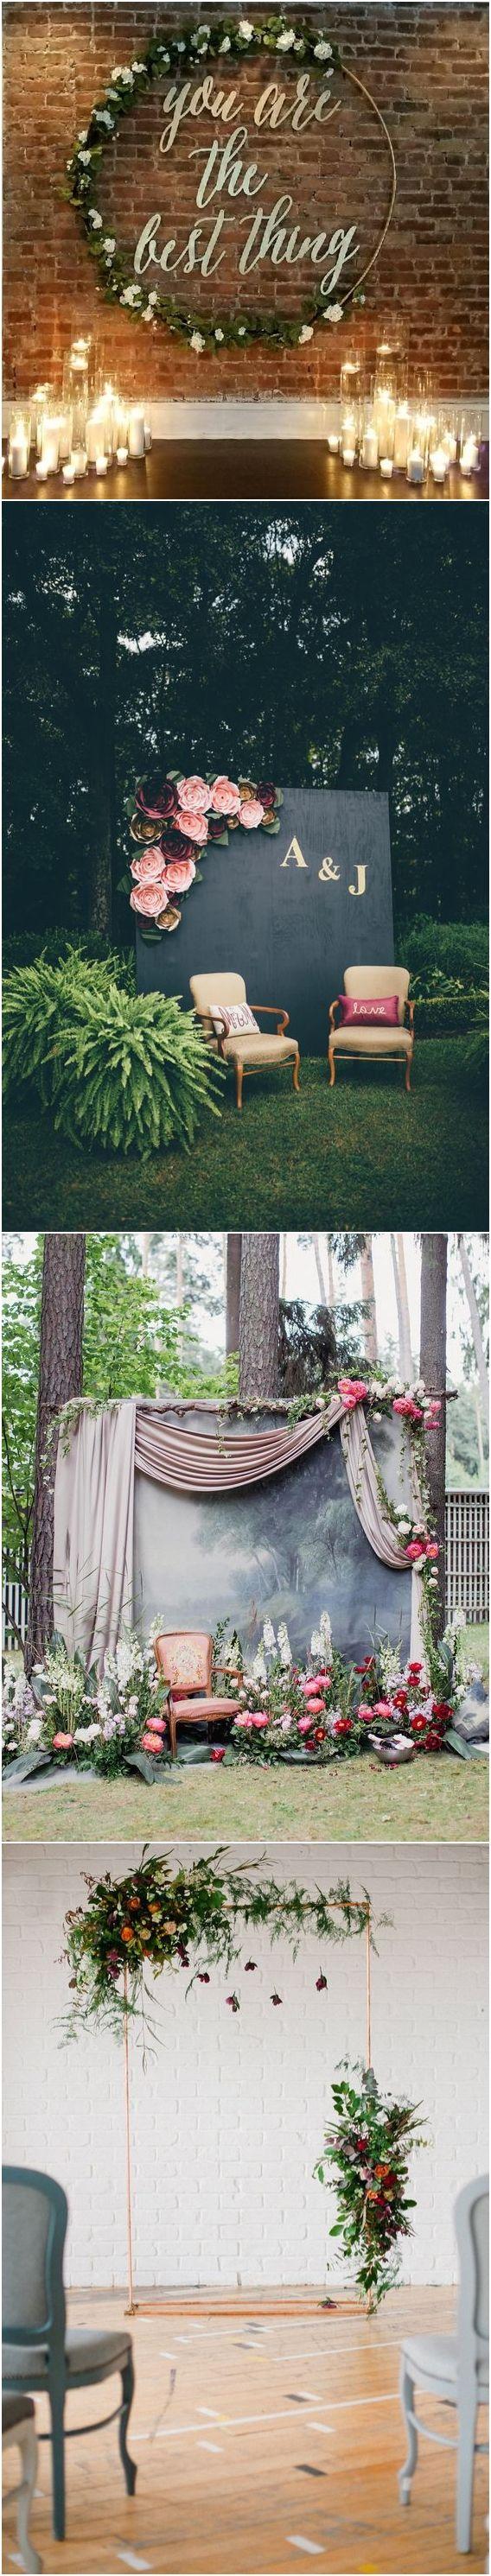 زفاف - 20 Best Of Wedding Backdrop Ideas From Pinterest